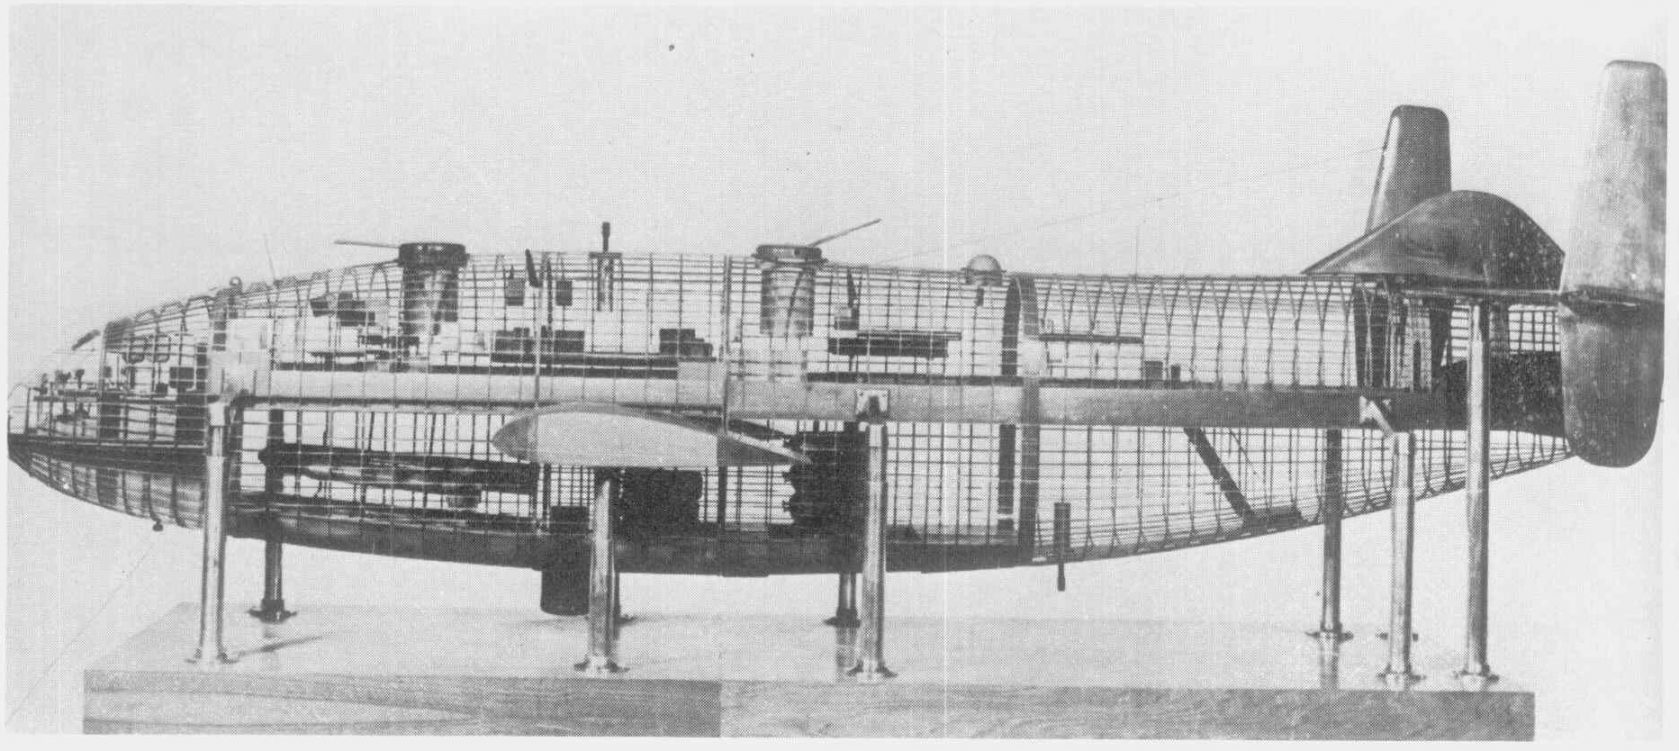 Двухпалубники компании Breguet. Часть 4 Проект противолодочного самолета Breguet 764 ASM. Франция